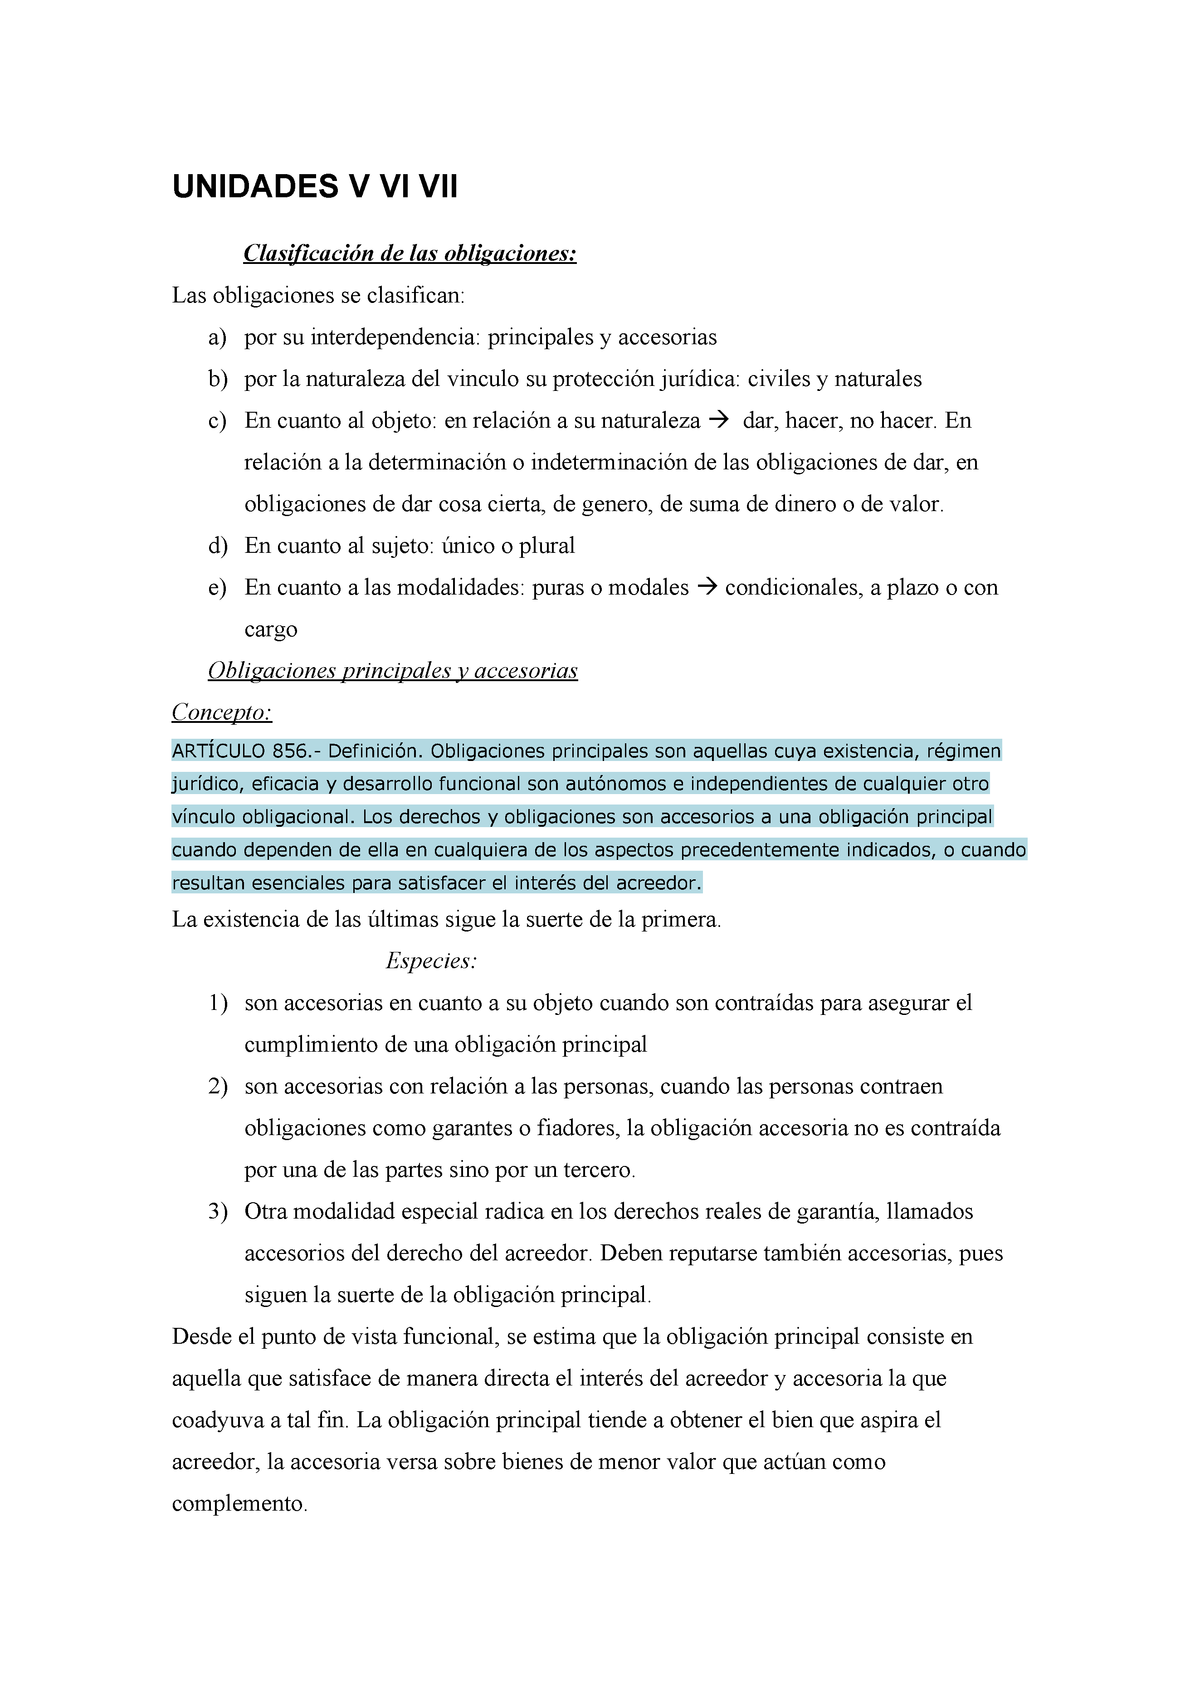 guillermo borda manual de obligaciones pdf free